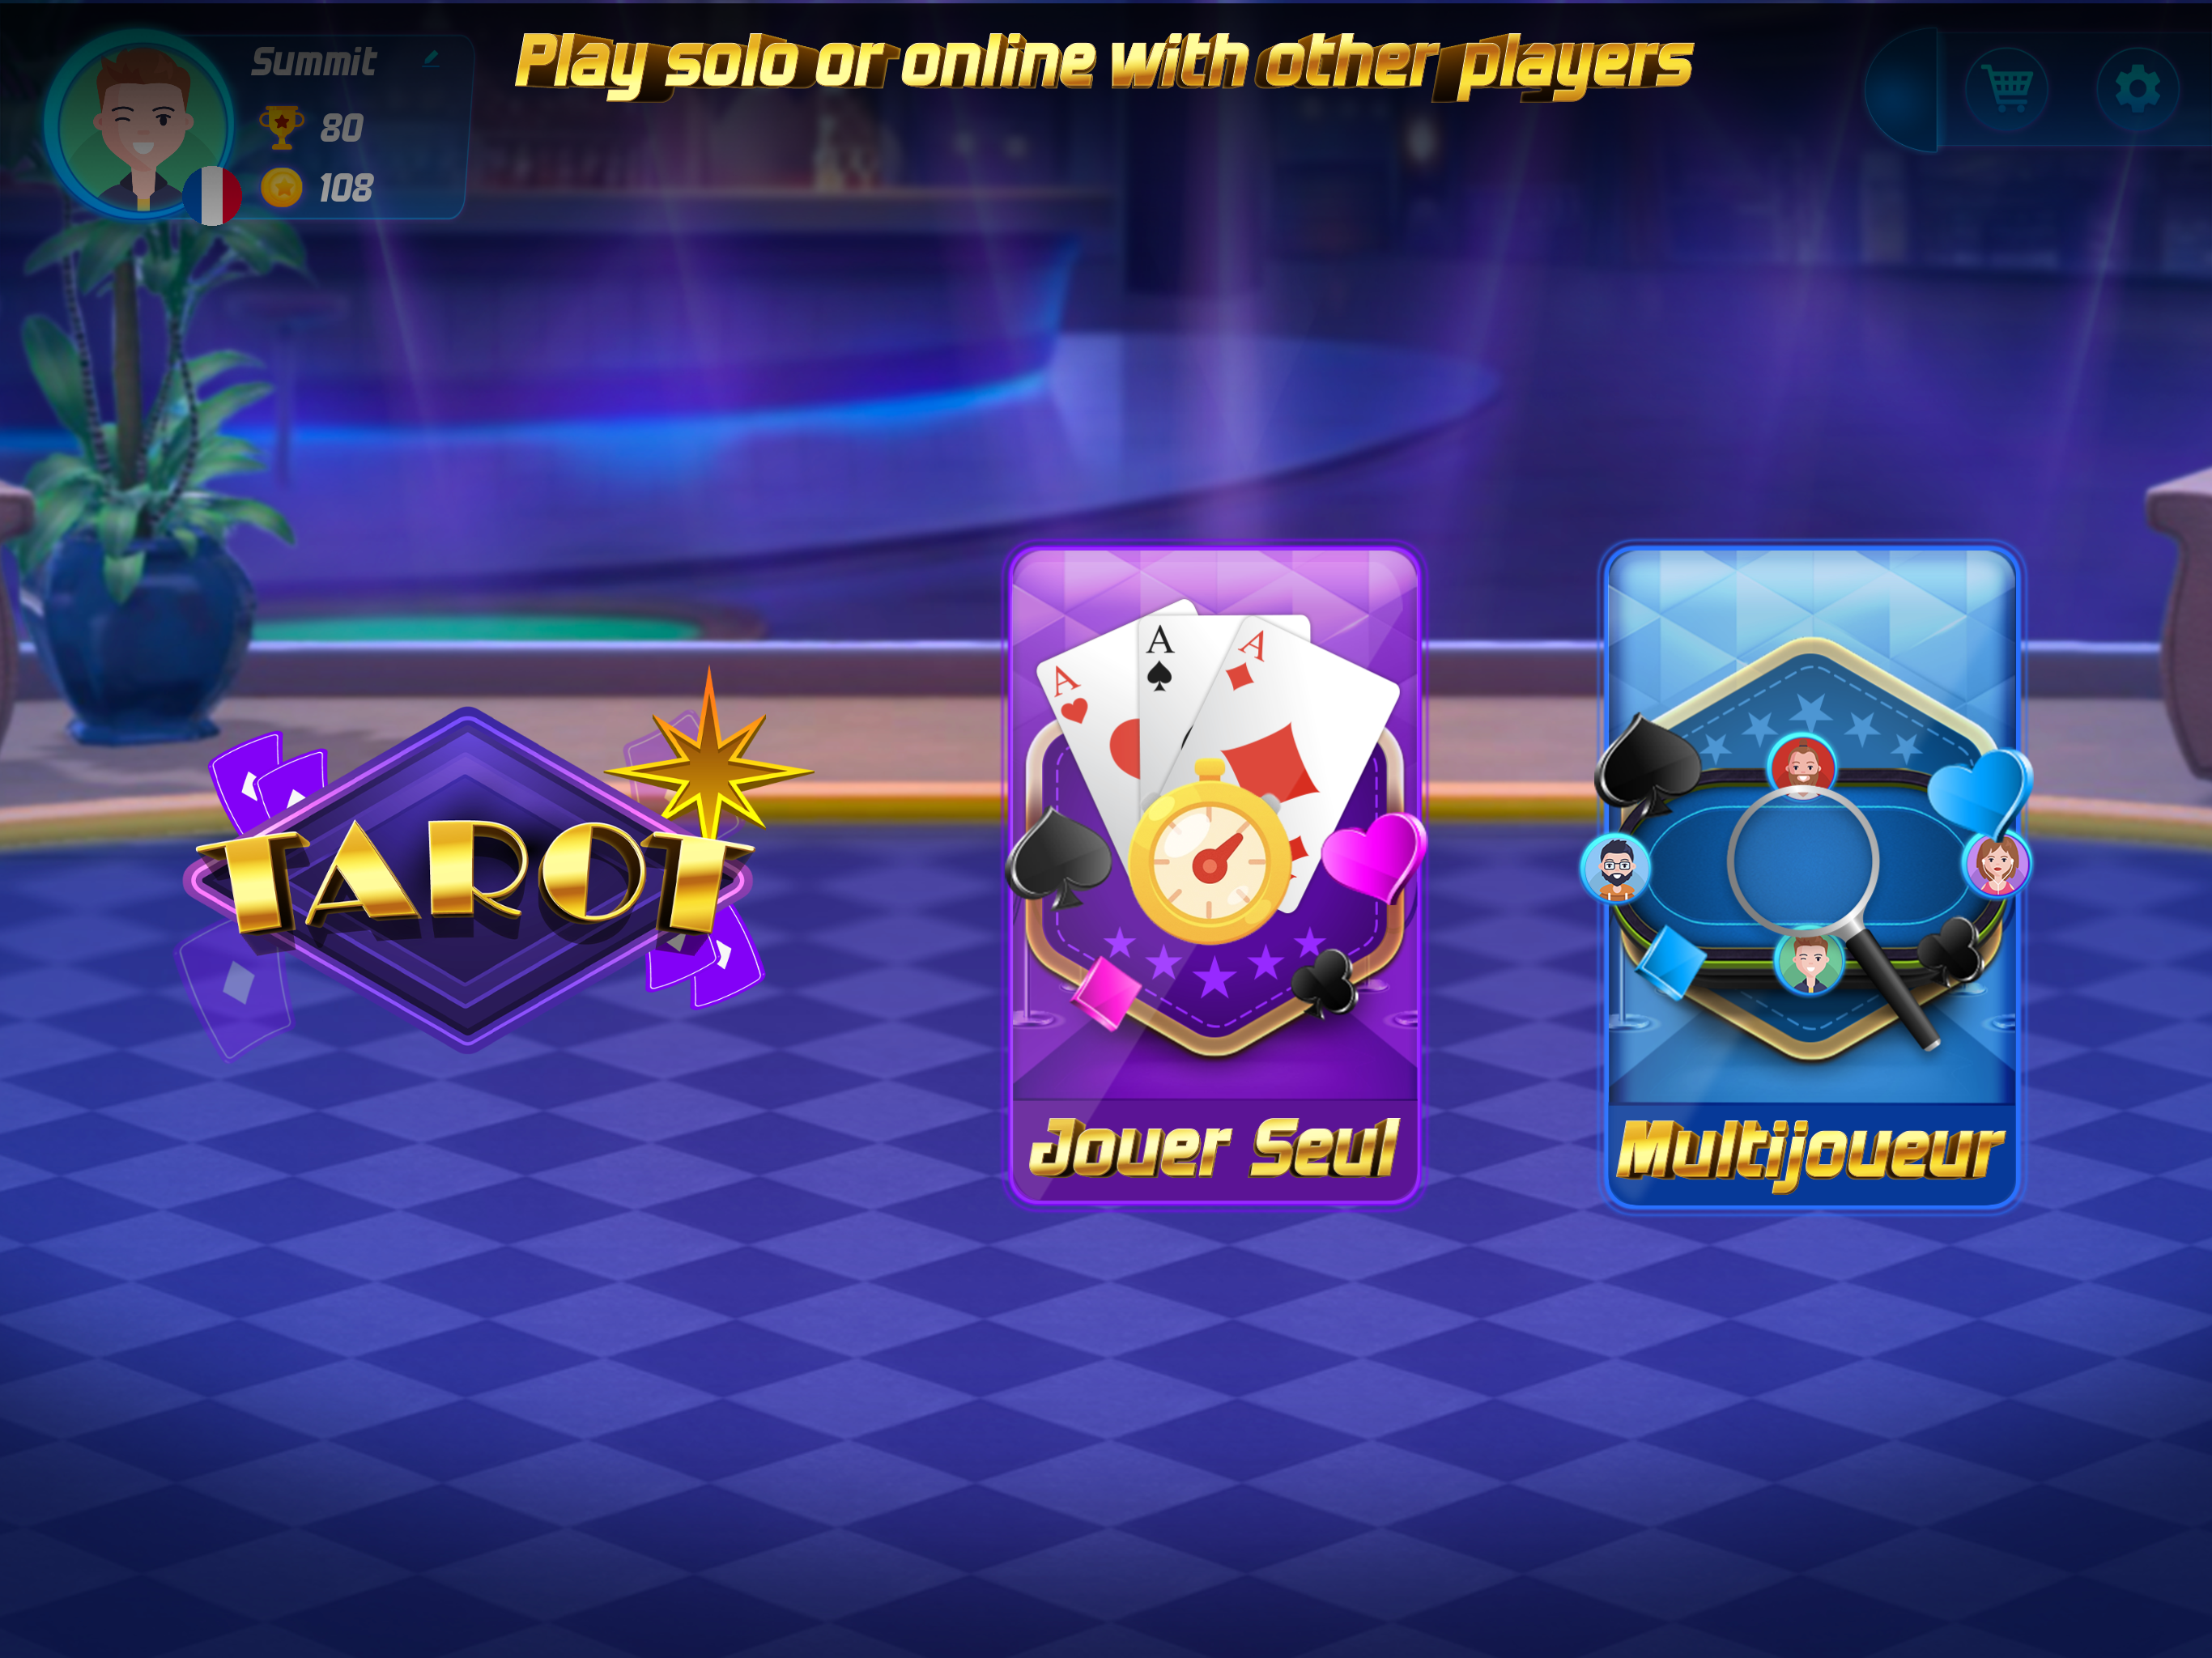 Tarot online card game 게임 스크린 샷